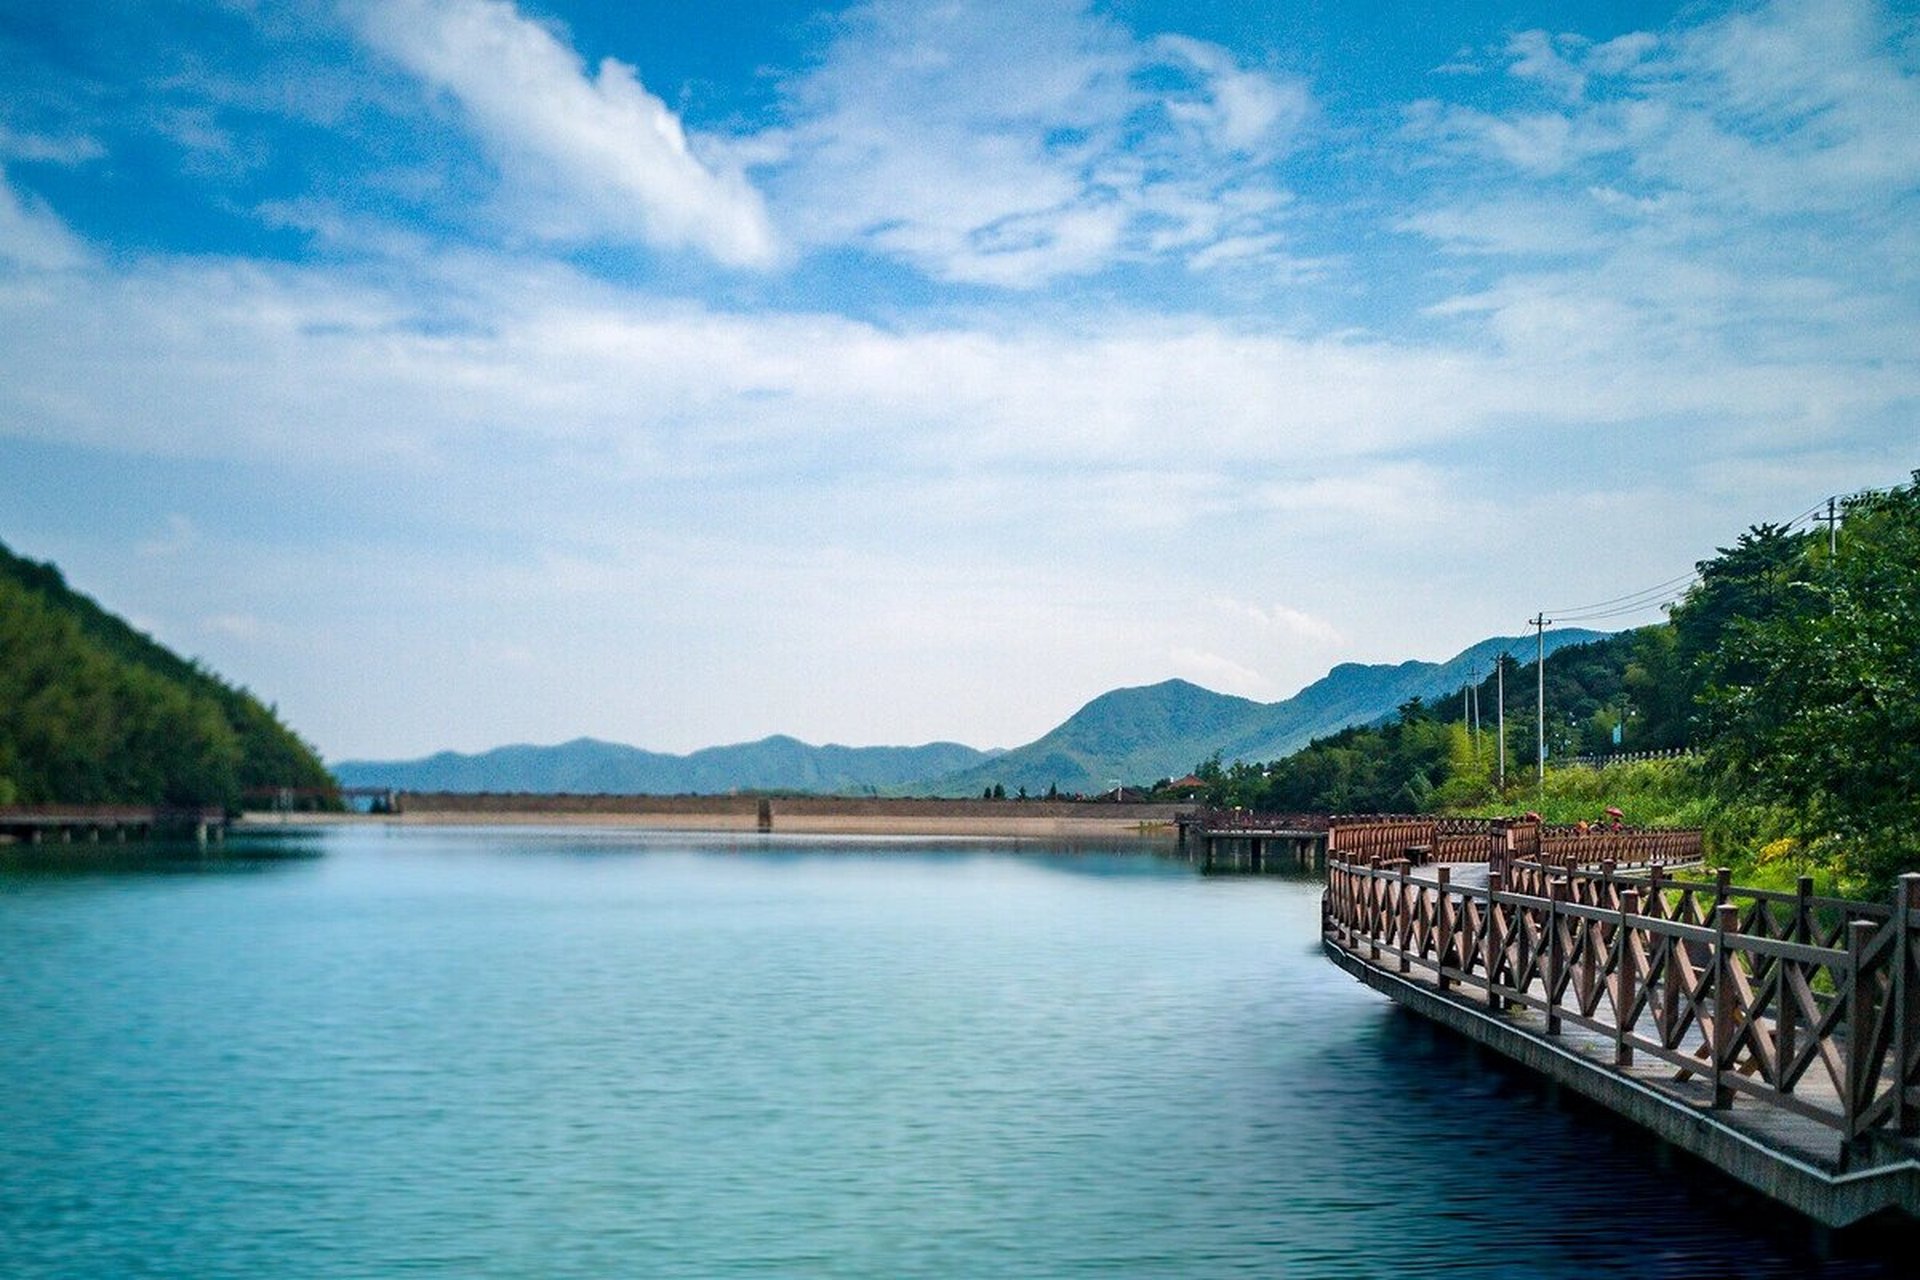 浏阳长兴湖,风景太美了 长兴湖是湖南省浏阳市东北部的一个湖泊,水面